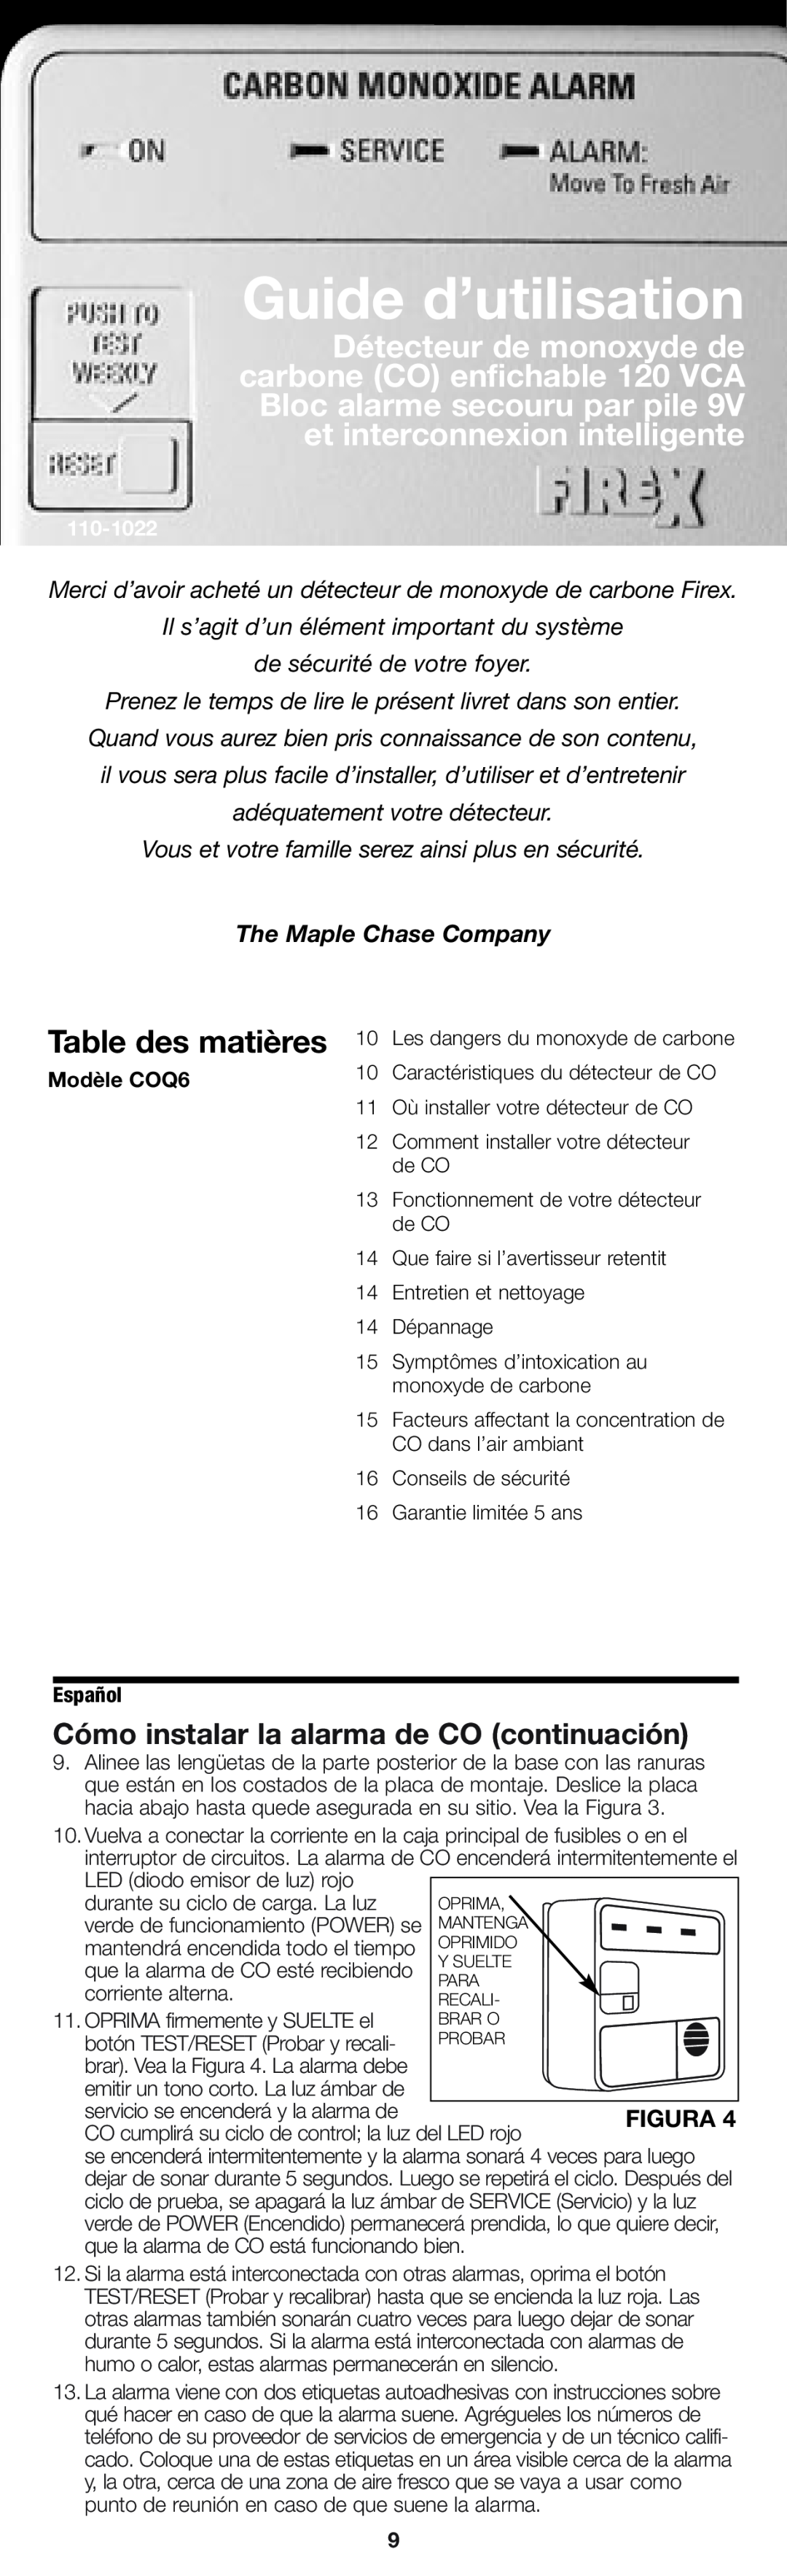 Firex pmn Table des matières, Cómo instalar la alarma de CO continuación, Guide d’utilisation, The Maple Chase Company 